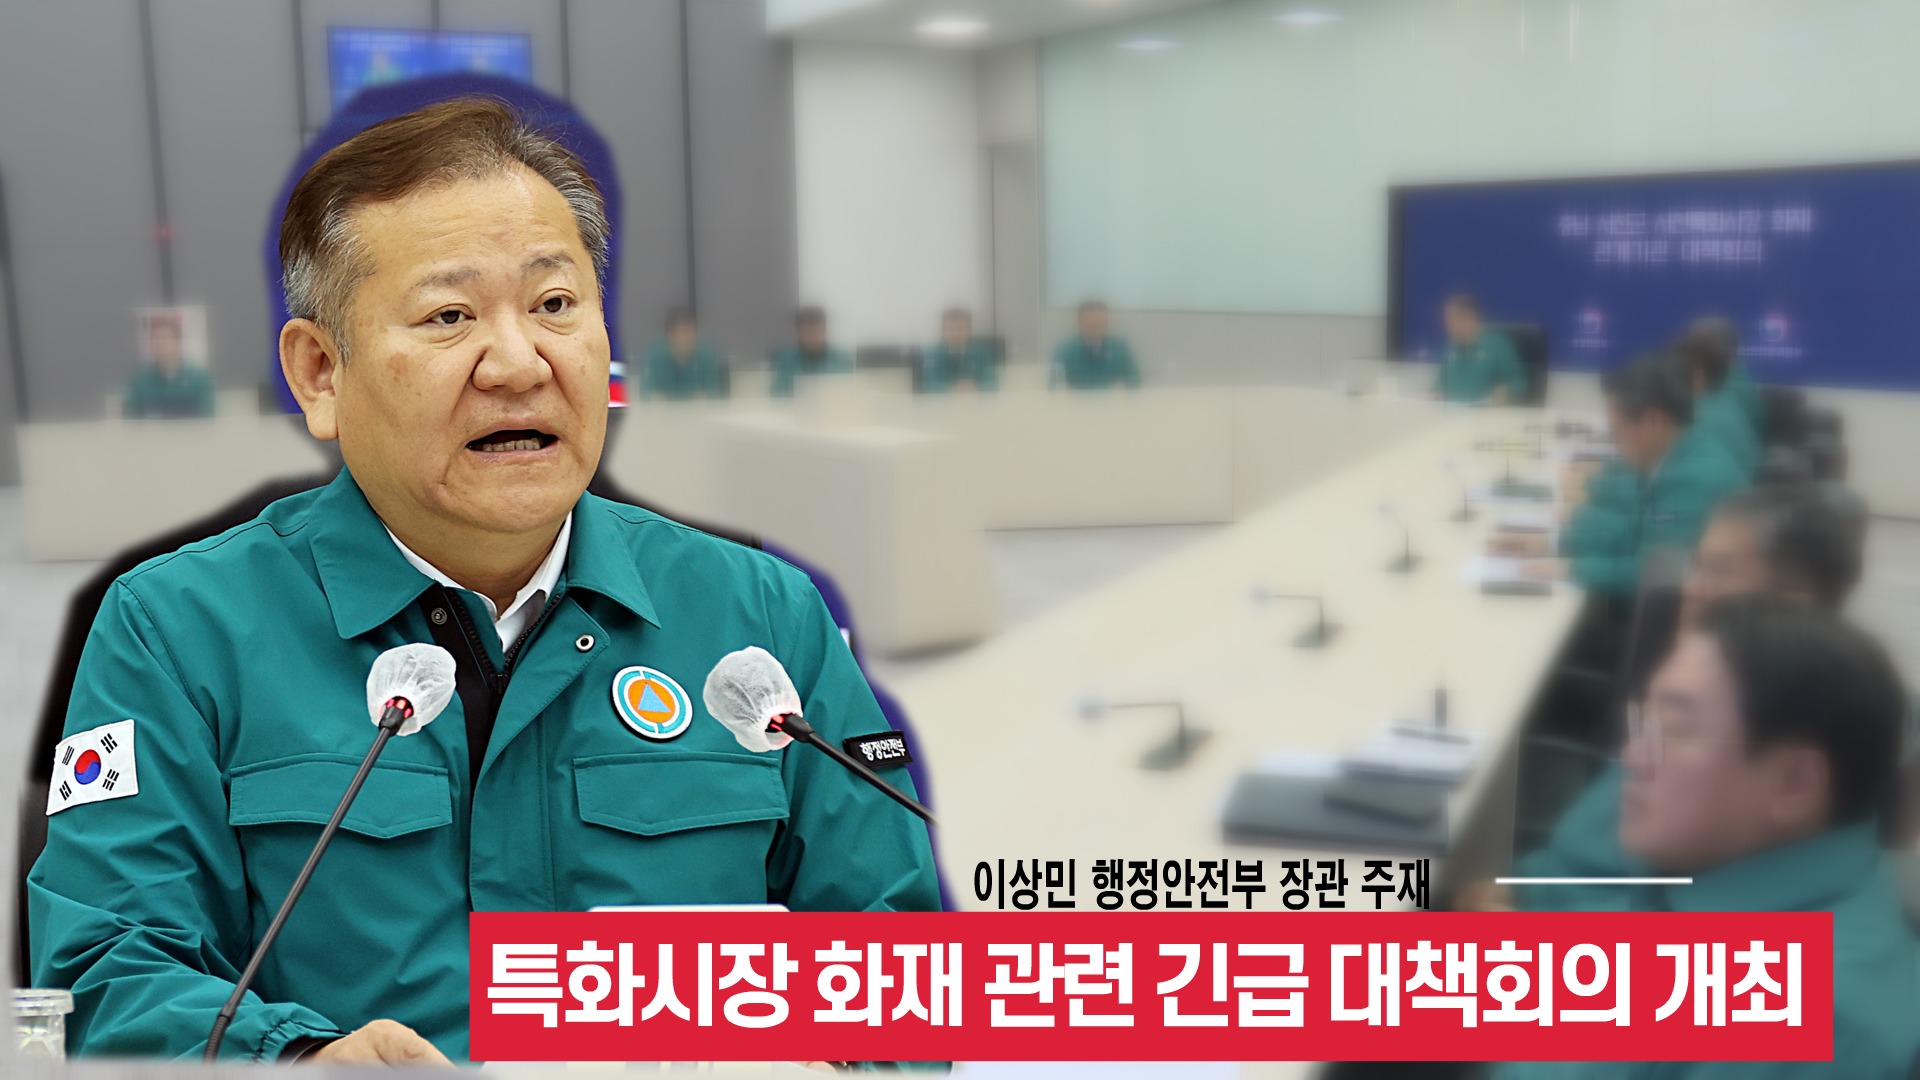 이상민 장관, 충남 서천특화시장 화재 관련 긴급 대책회의 주재